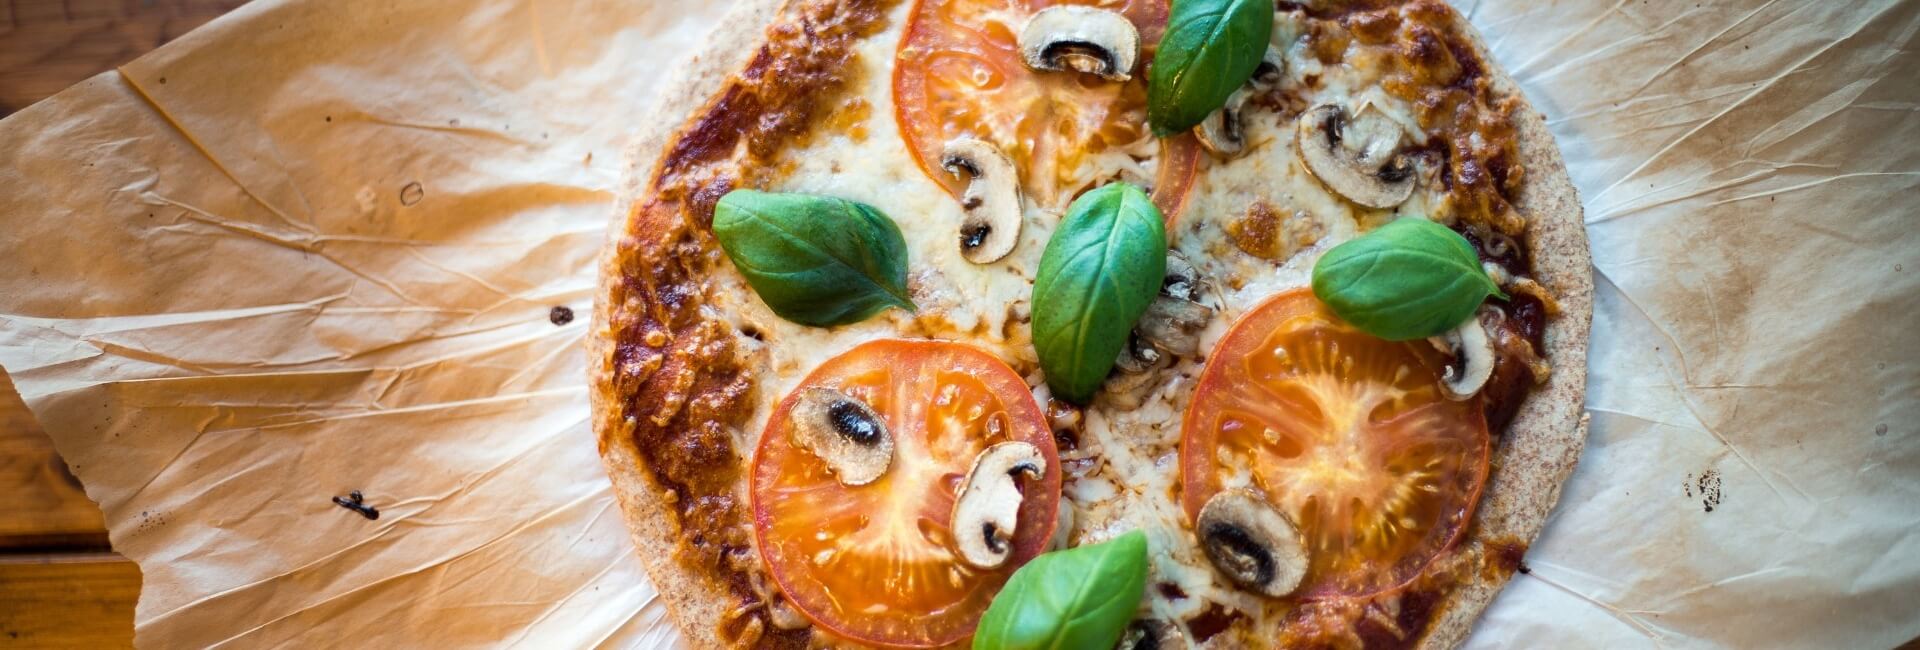 Pizza de tomate, cogumelos e manjericão